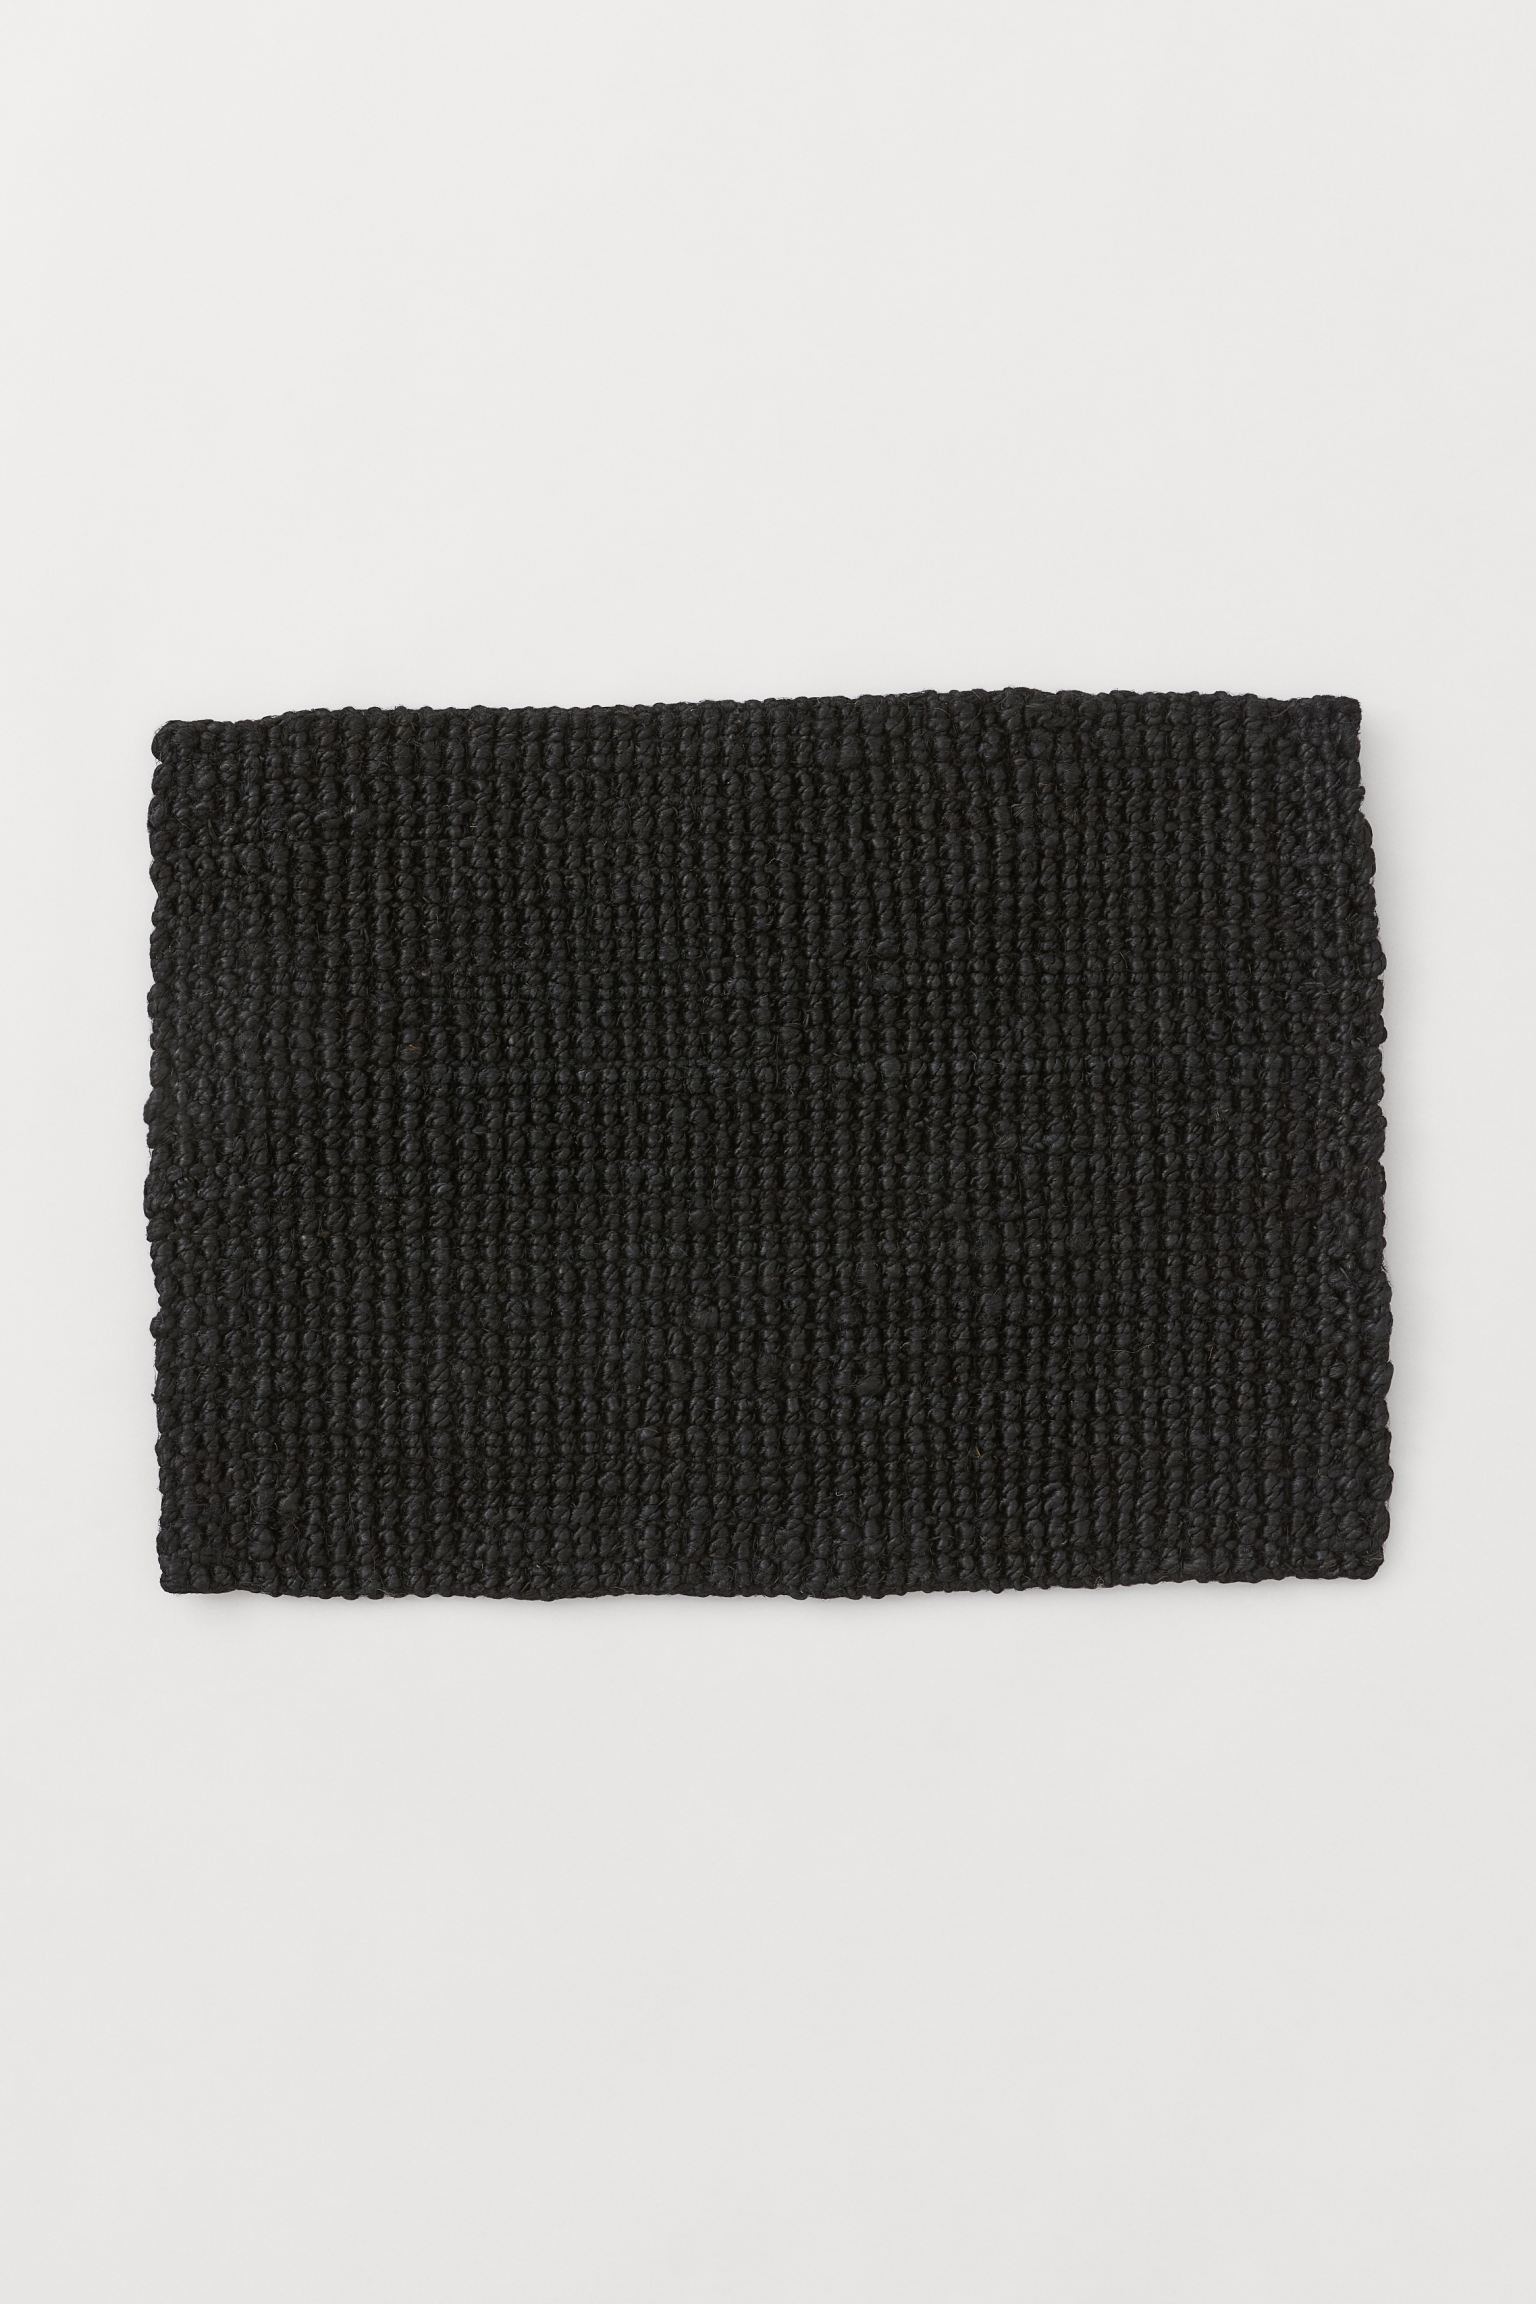 Джутовый коврик, Черный, 50x70